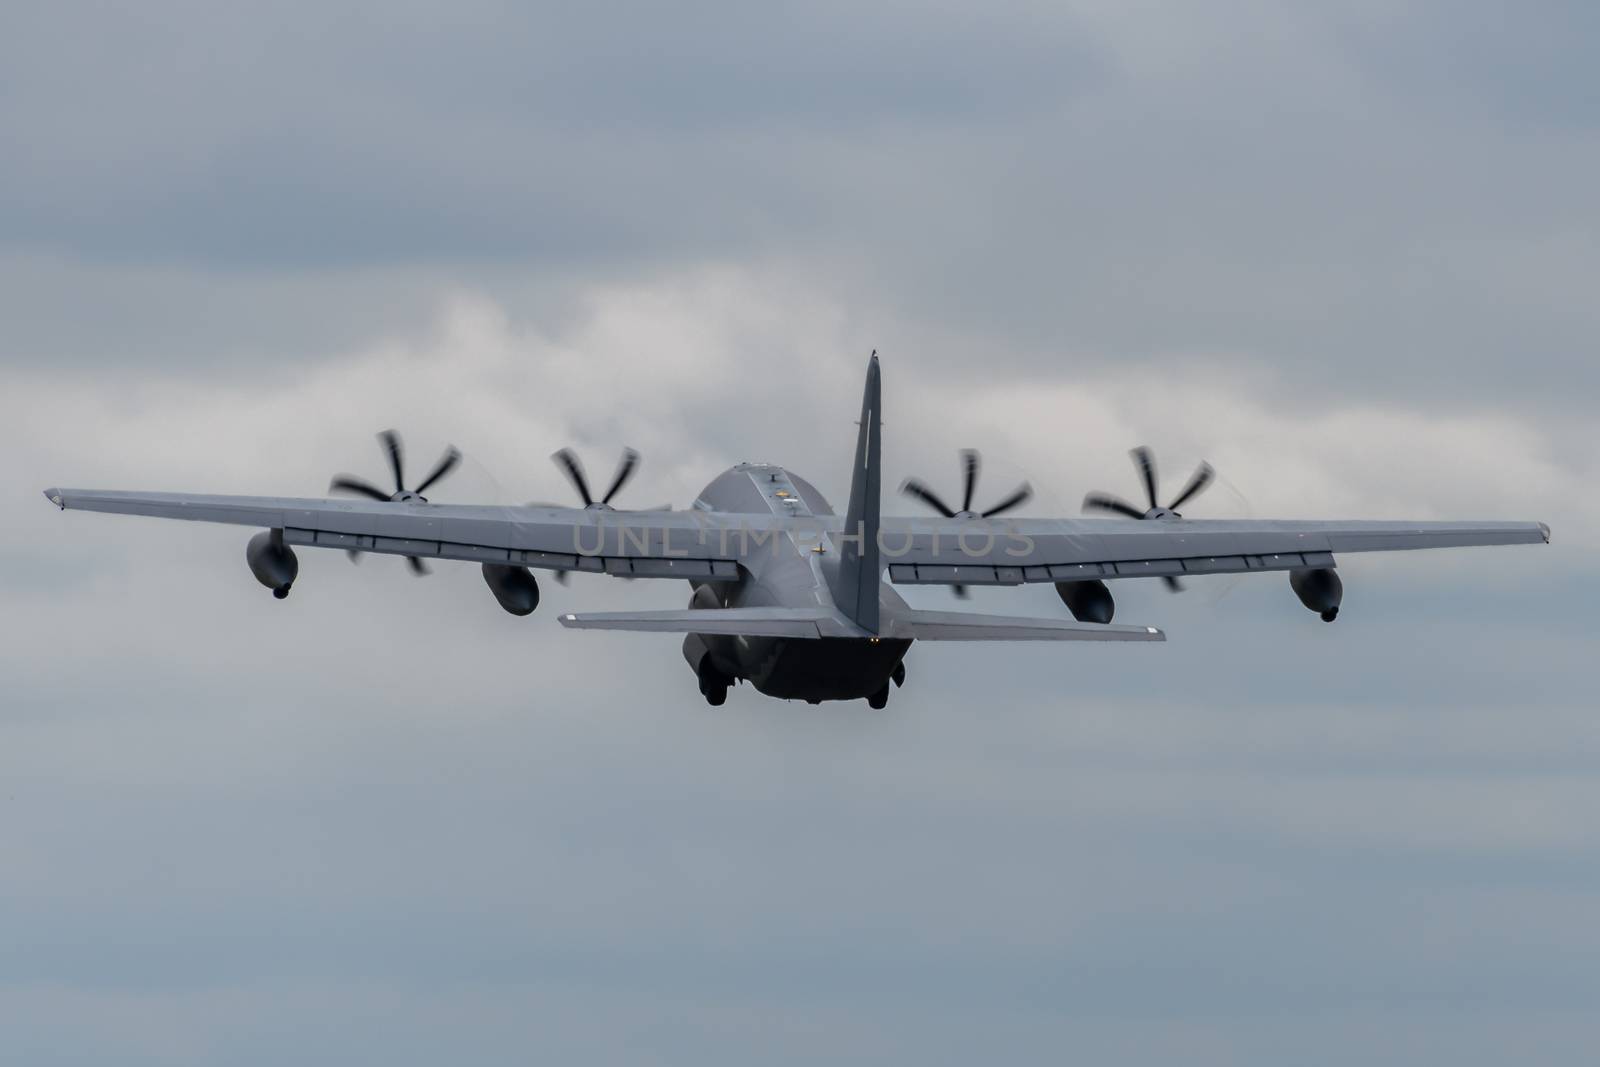 US Air Force C-130 Hercules aircraft at Mildenhall Air Base